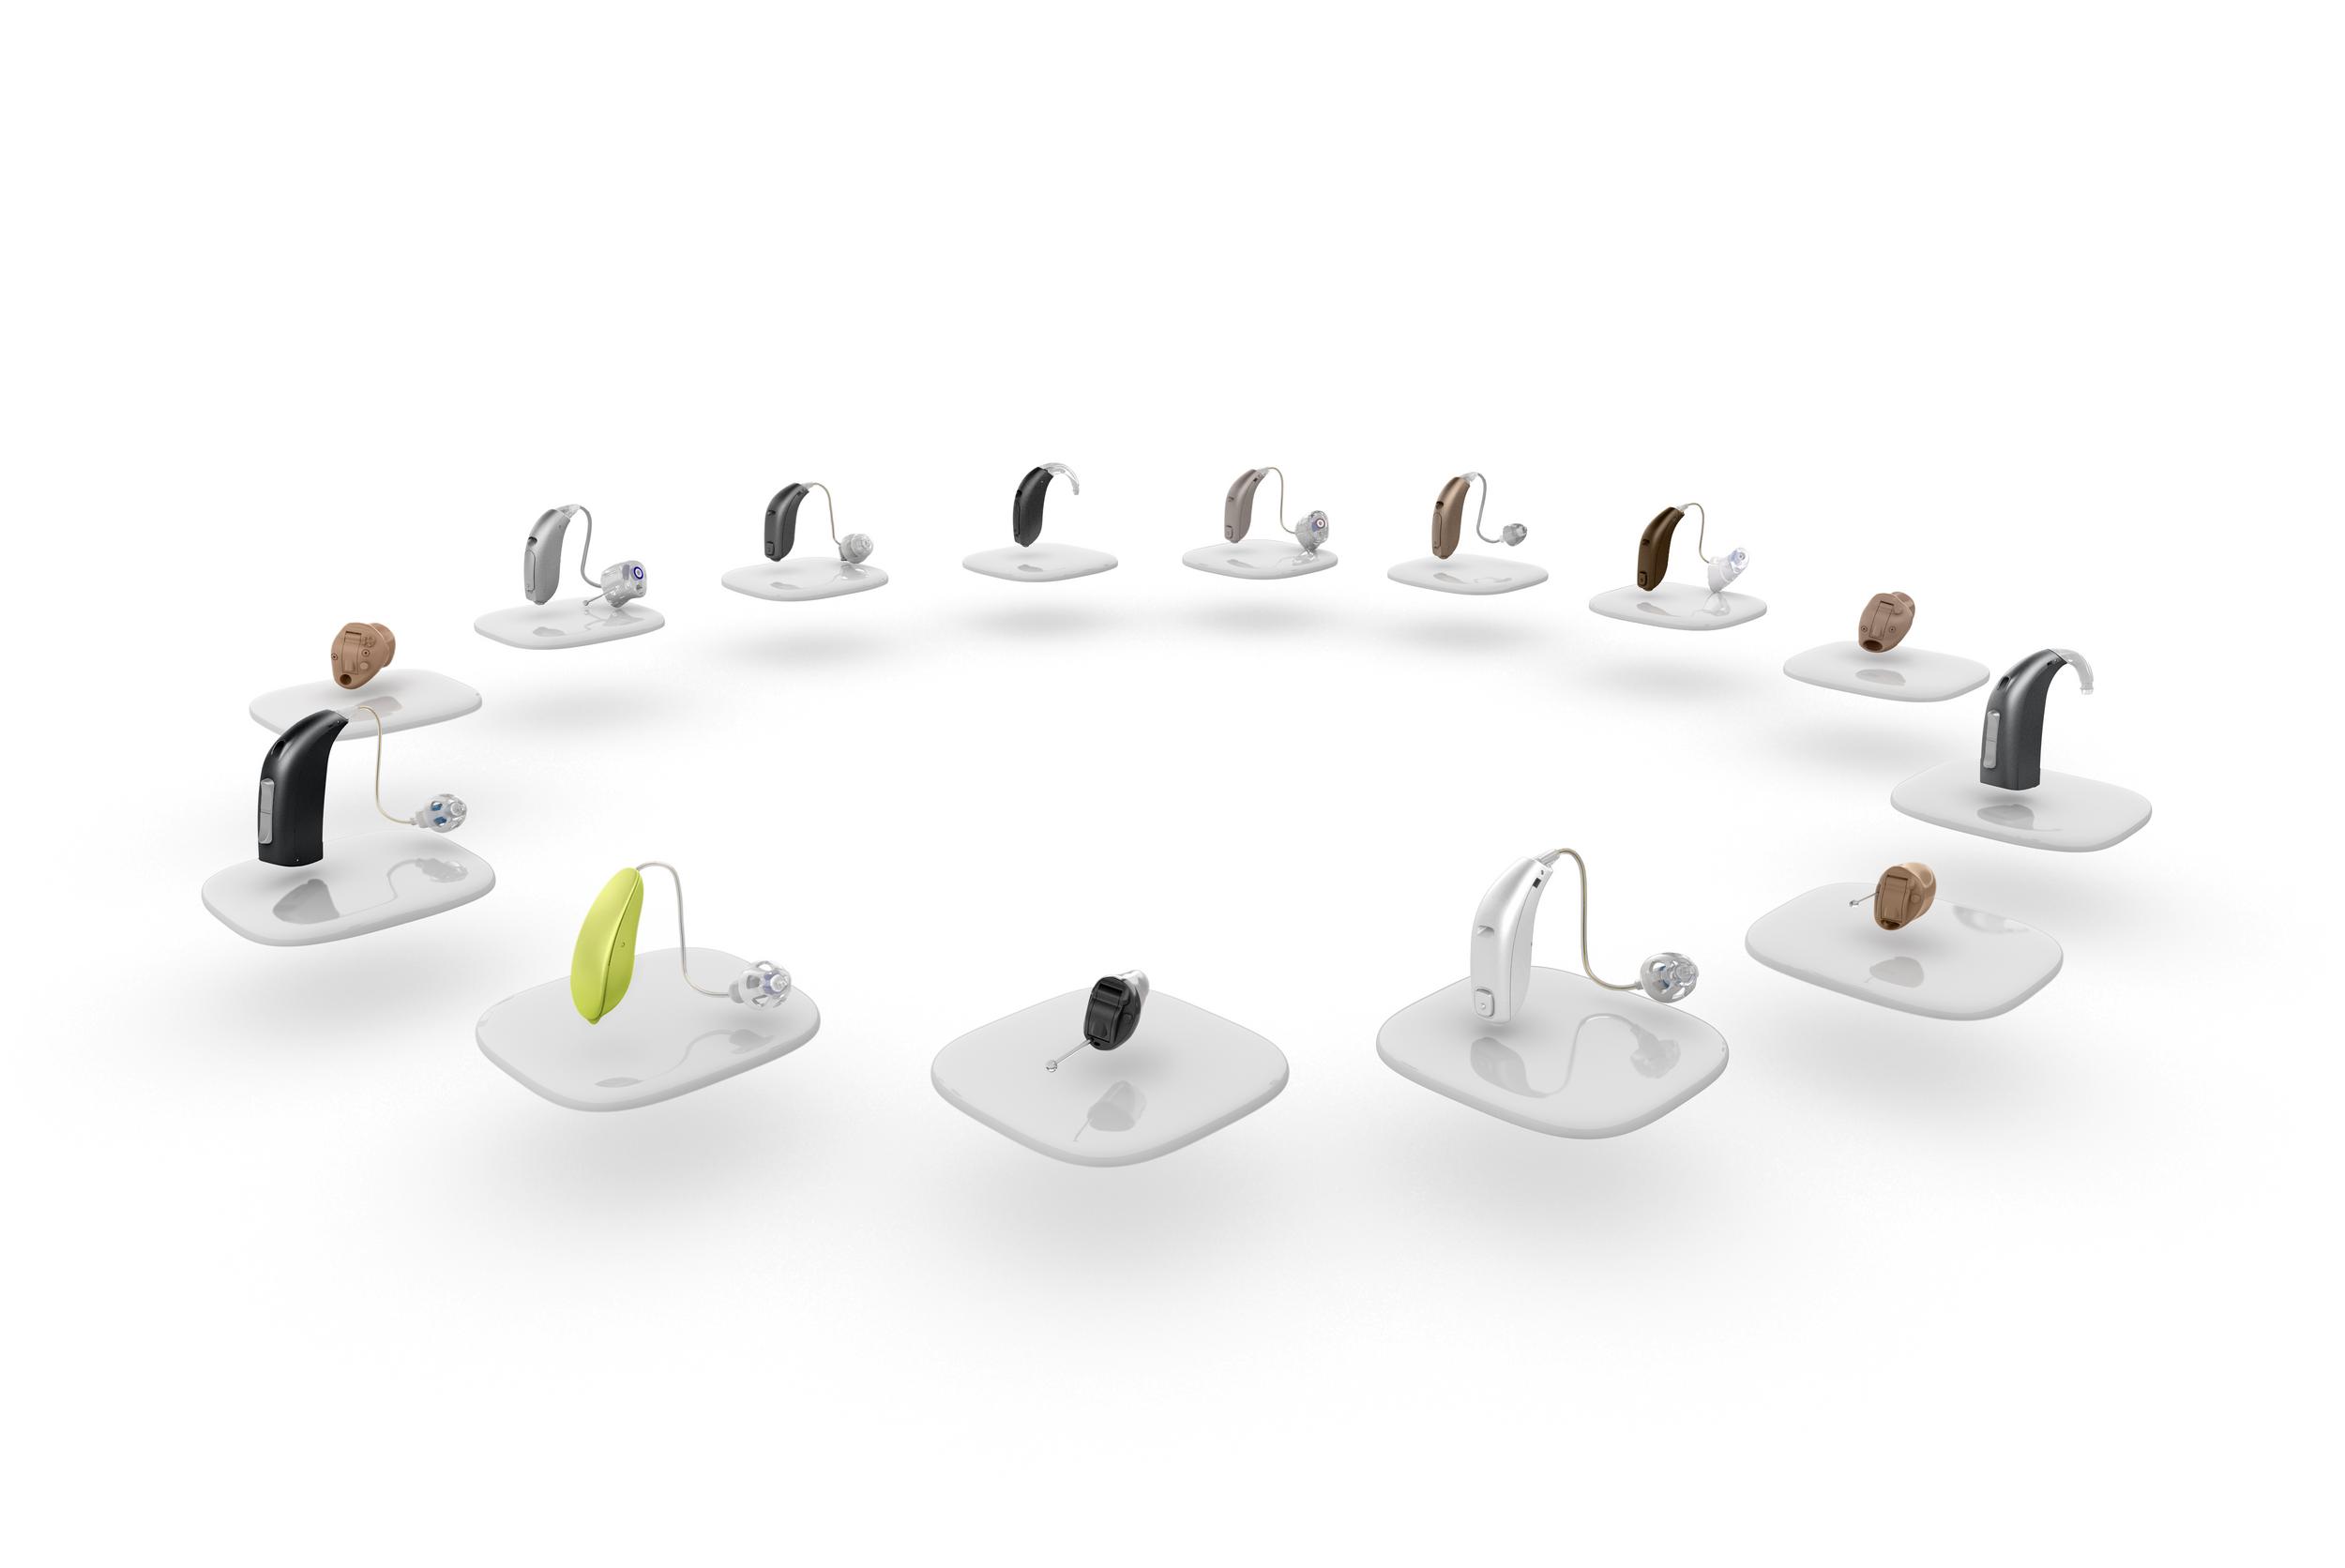 Eine Auswahl an verschiedenen Modellen von Hörgeräten als Keyvisual im Kreis angeordnet.